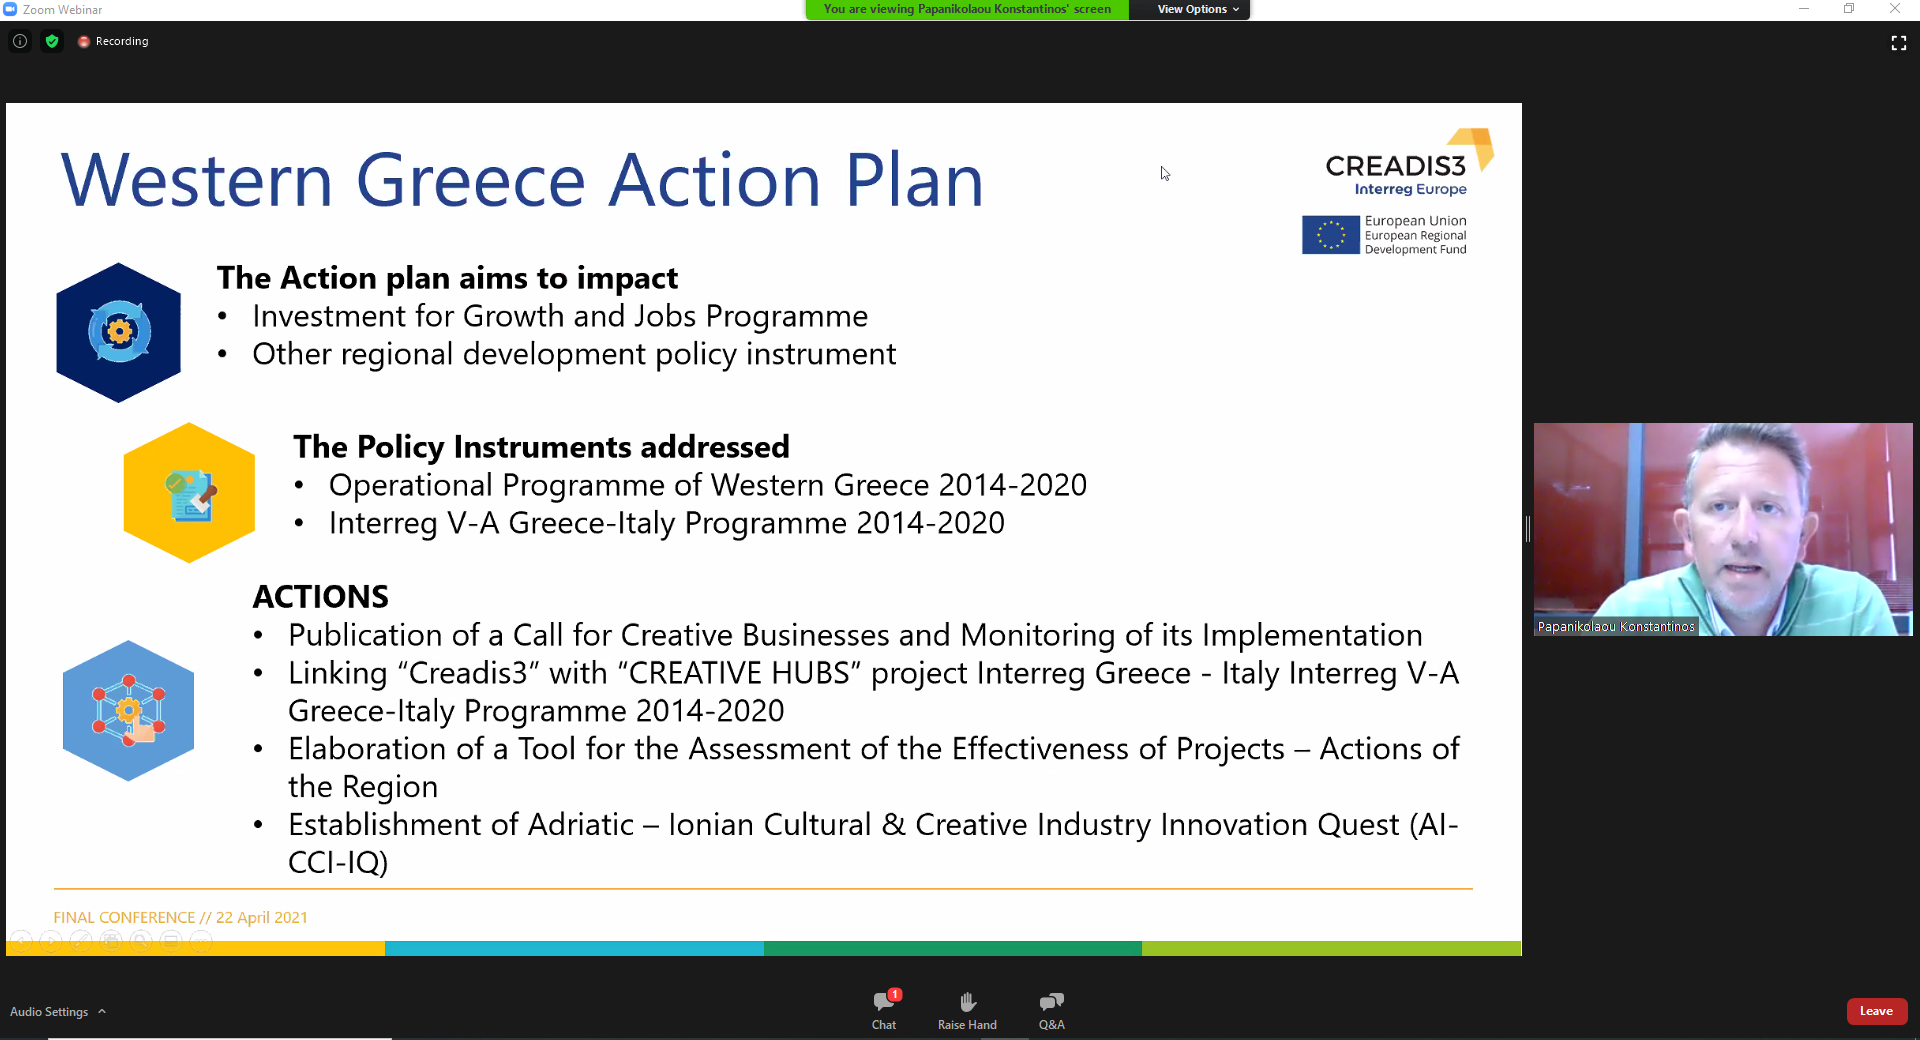 ΠΔΕ: Ολοκληρωμένο σχέδιο δράσης για τις δημιουργικές επιχειρήσεις της Δυτικής Ελλάδας, μέσω του ευρωπαϊκού έργου CREADIS3-Interreg Europe